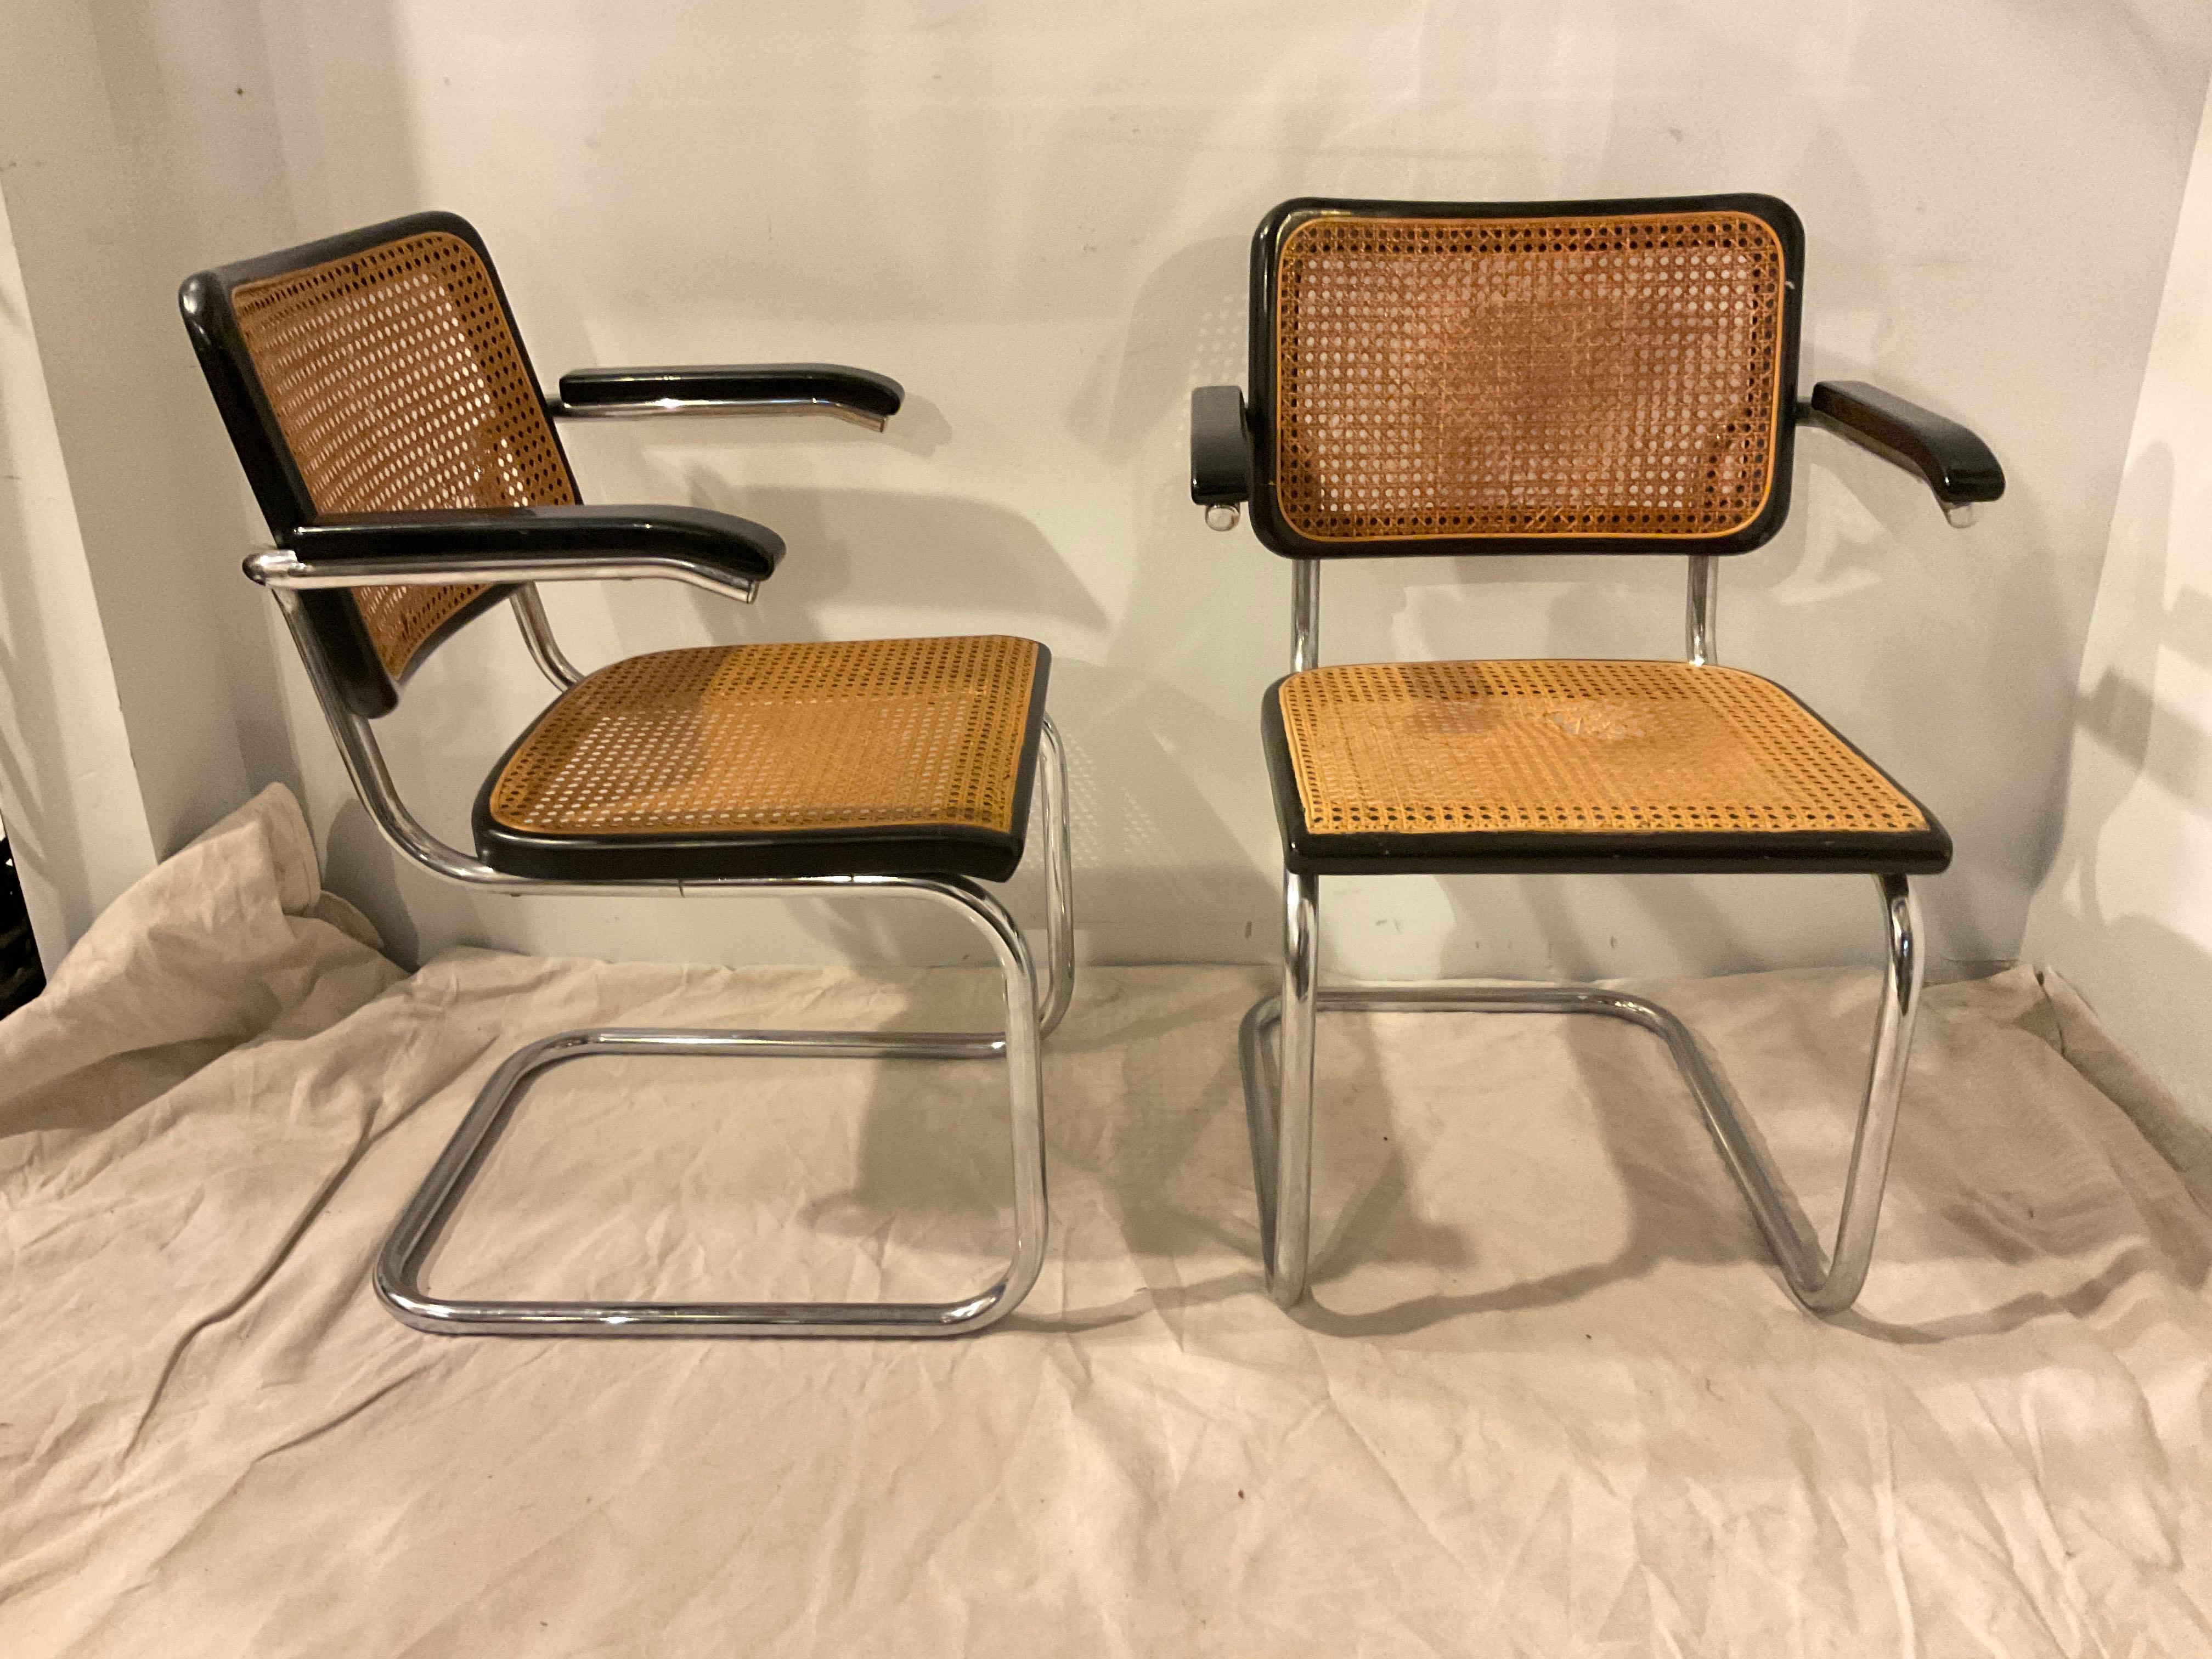 Ein Paar Cesca-Stühle aus den 1960er Jahren von Marcel Breuer für Thonet.
Ein Bereich ist in Ordnung, die 3 anderen Abschnitte müssen neu beschnitten werden.